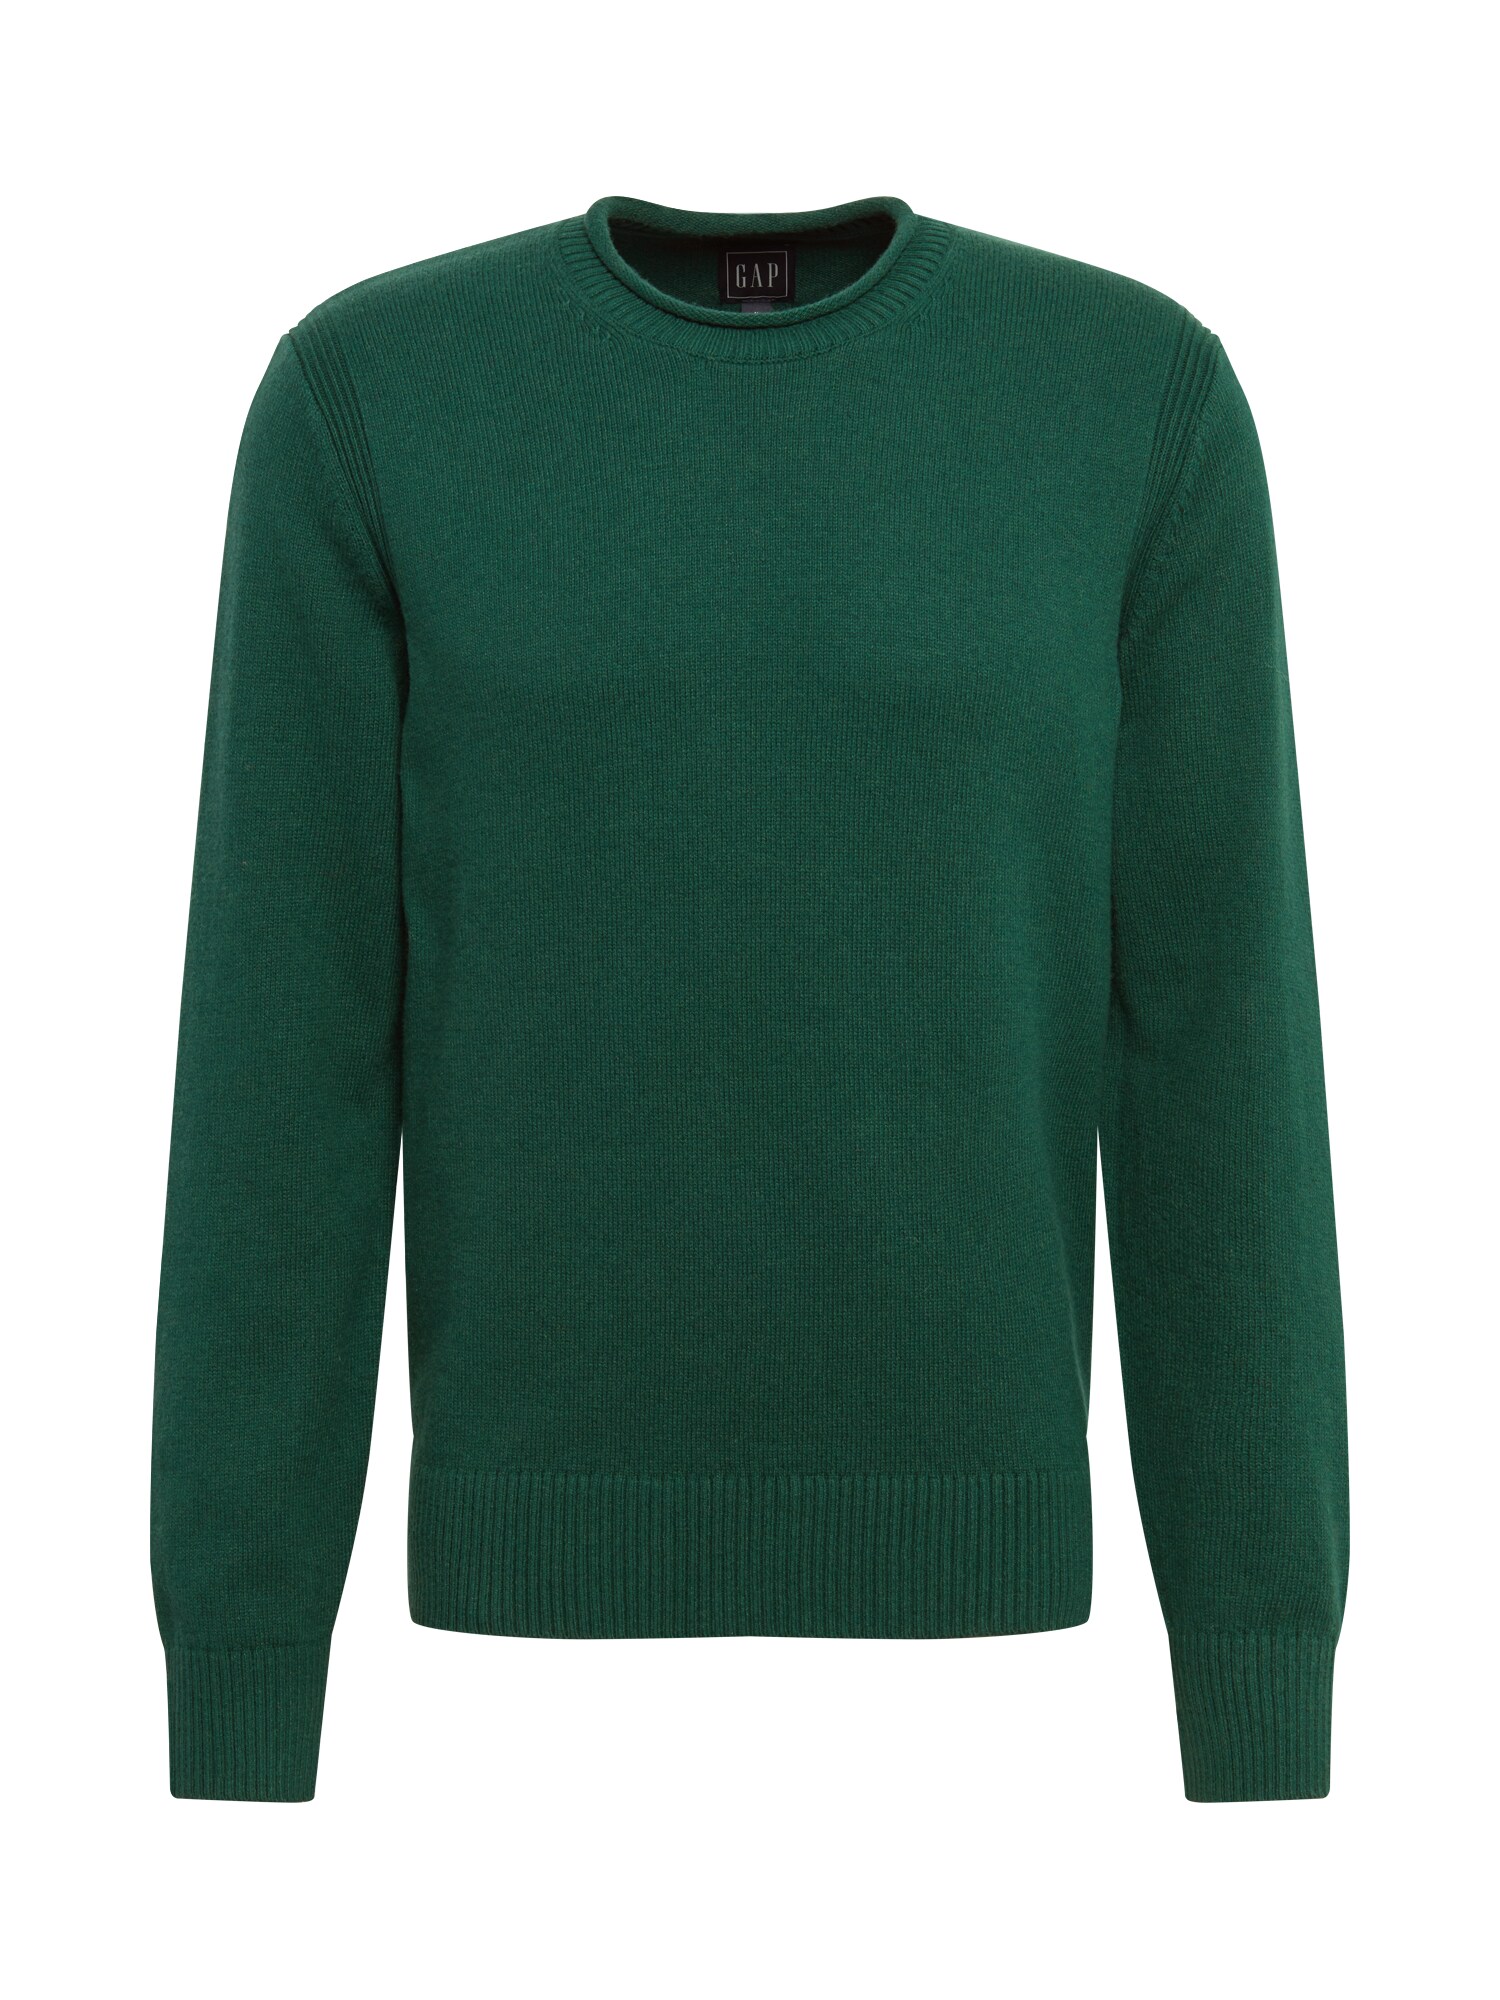 GAP Megztinis  margai žalia